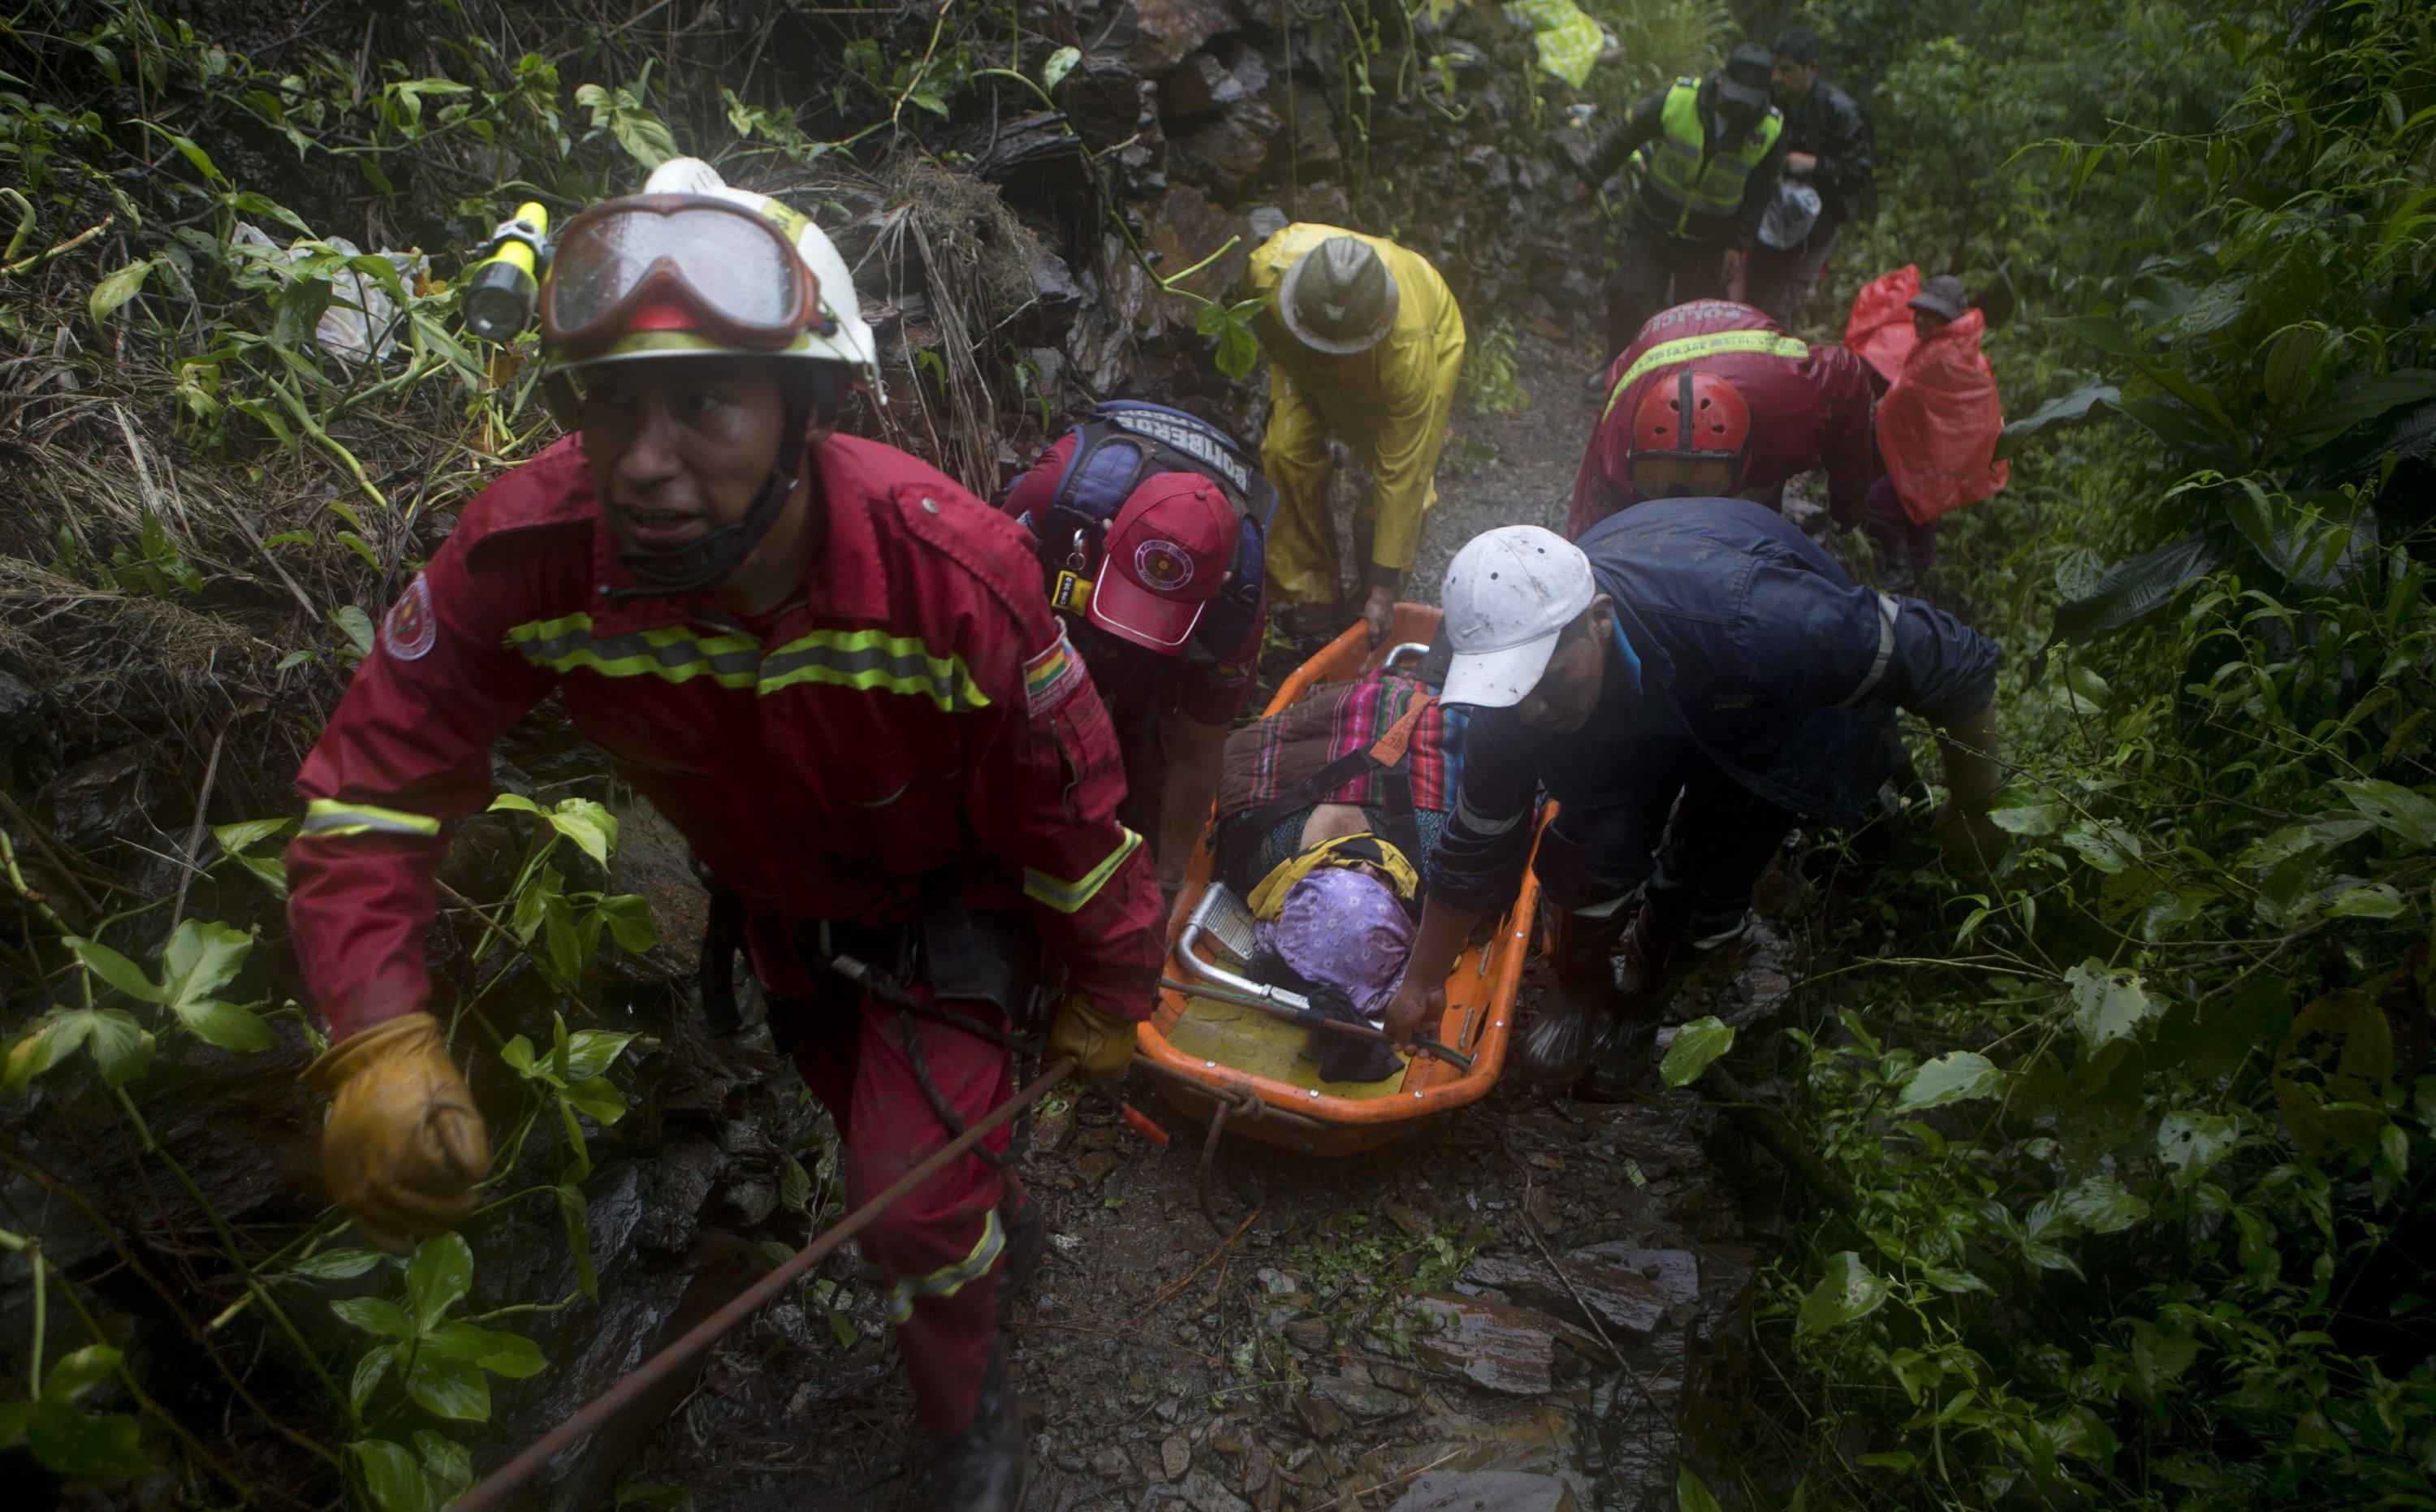 Landslide in Bolivia kills at least 11 many injured